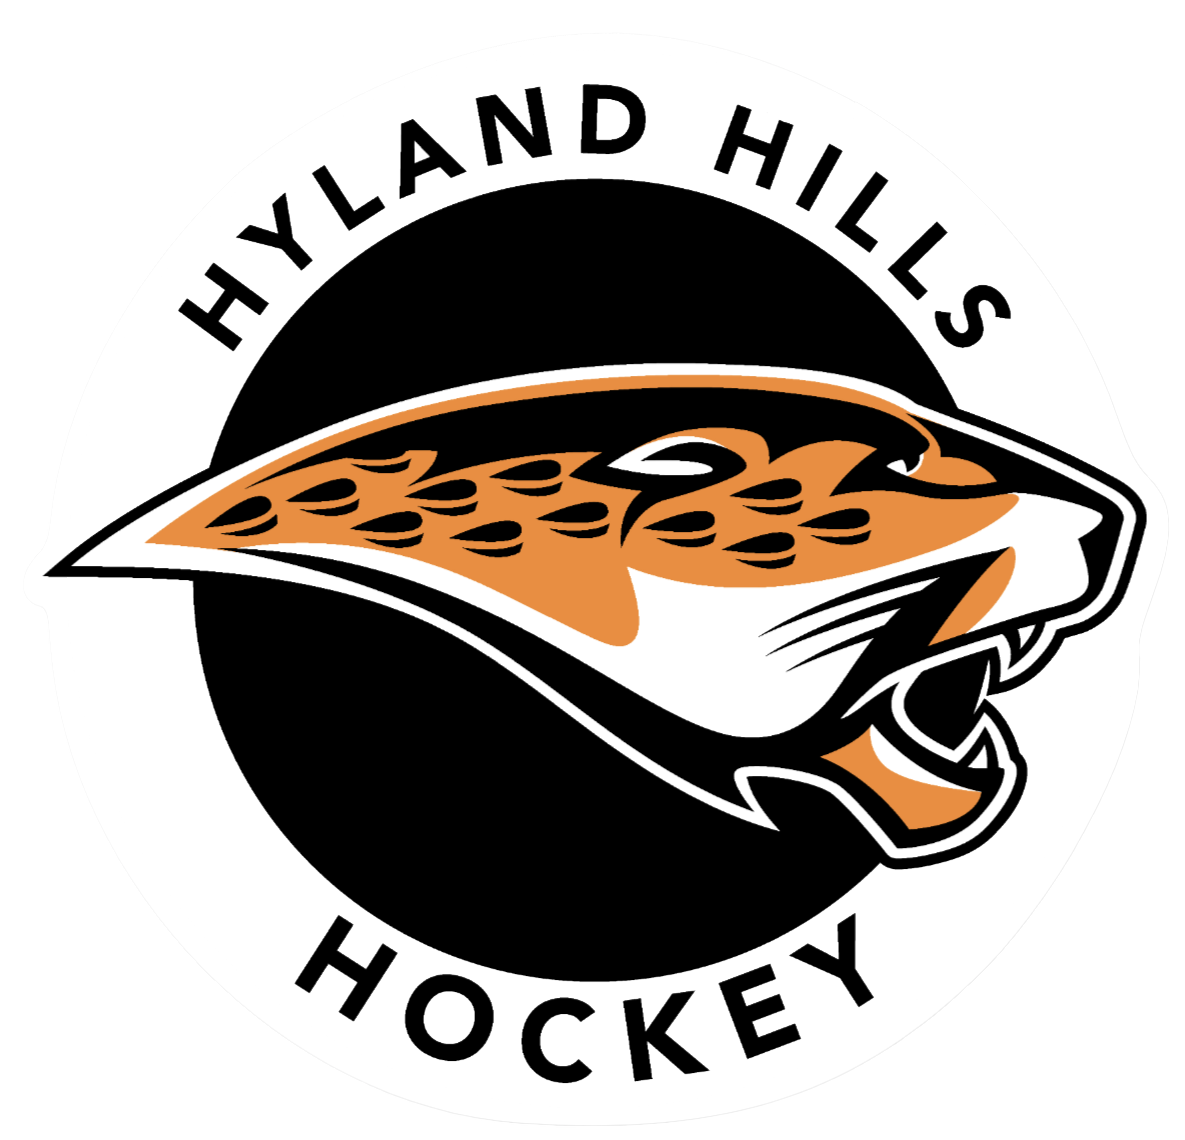 HylandHillsHockey